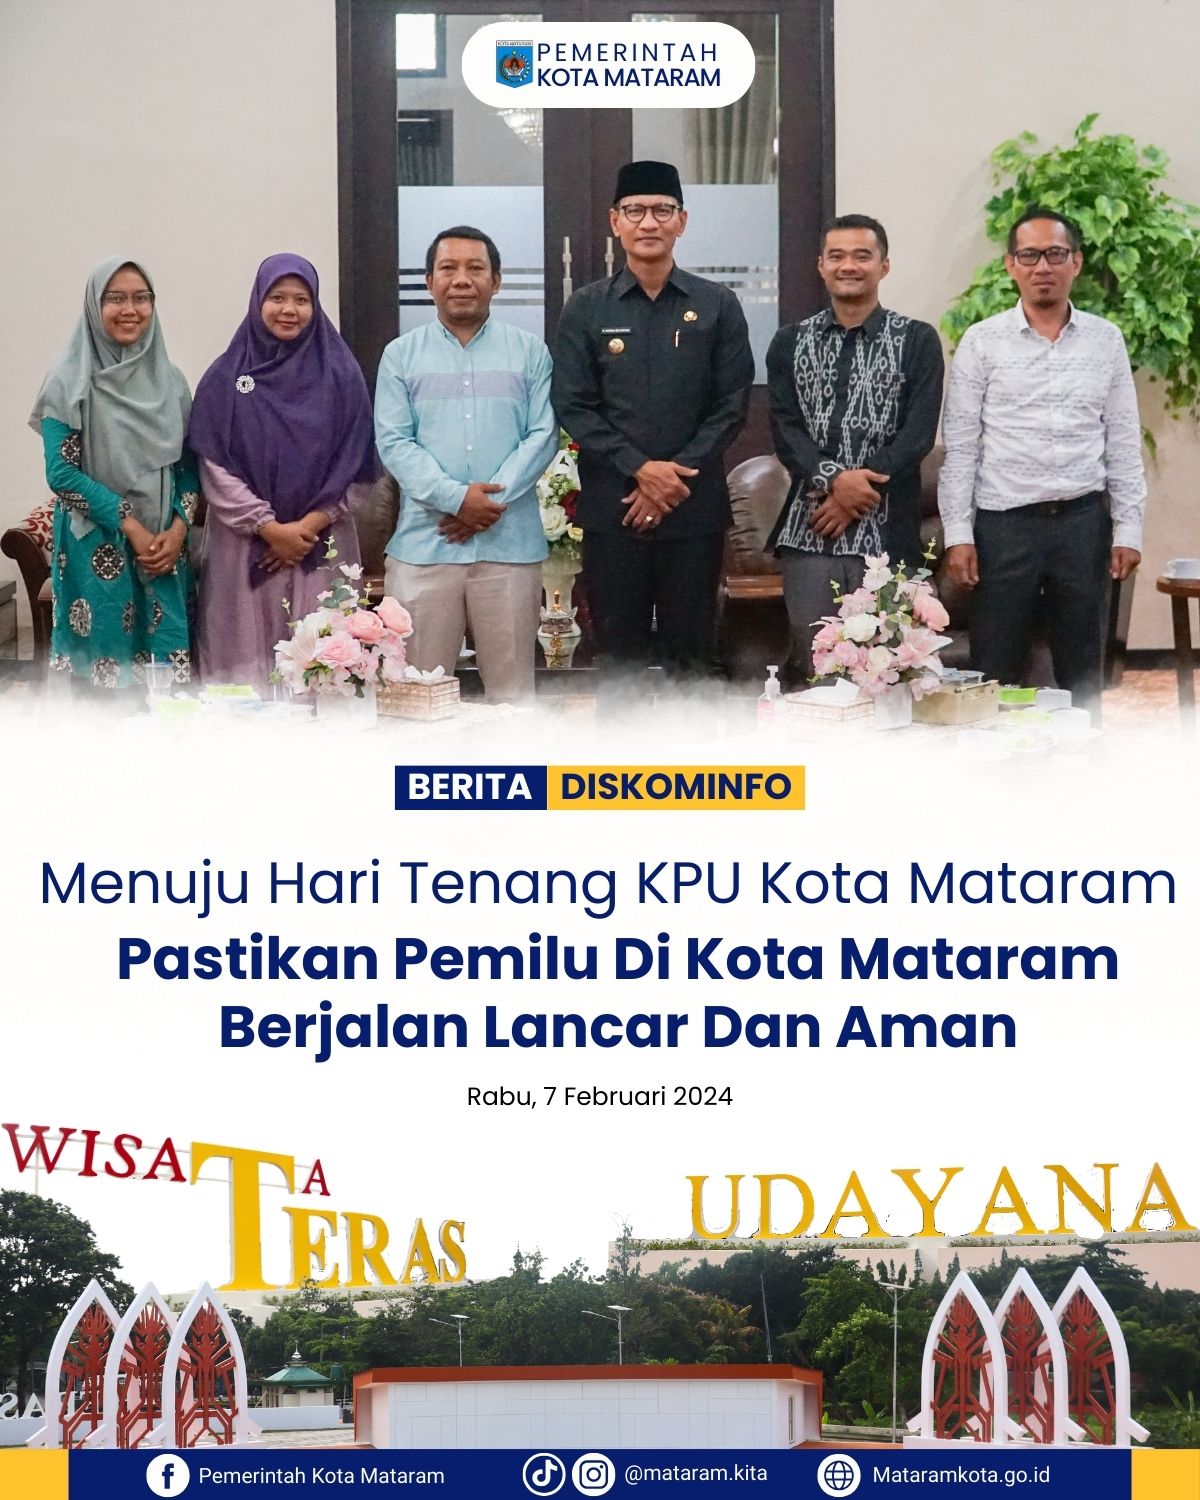 Menuju Hari Tenang, KPU Kota Mataram pastikan Pemilu di Kota Mataram berjalan lancar dan aman